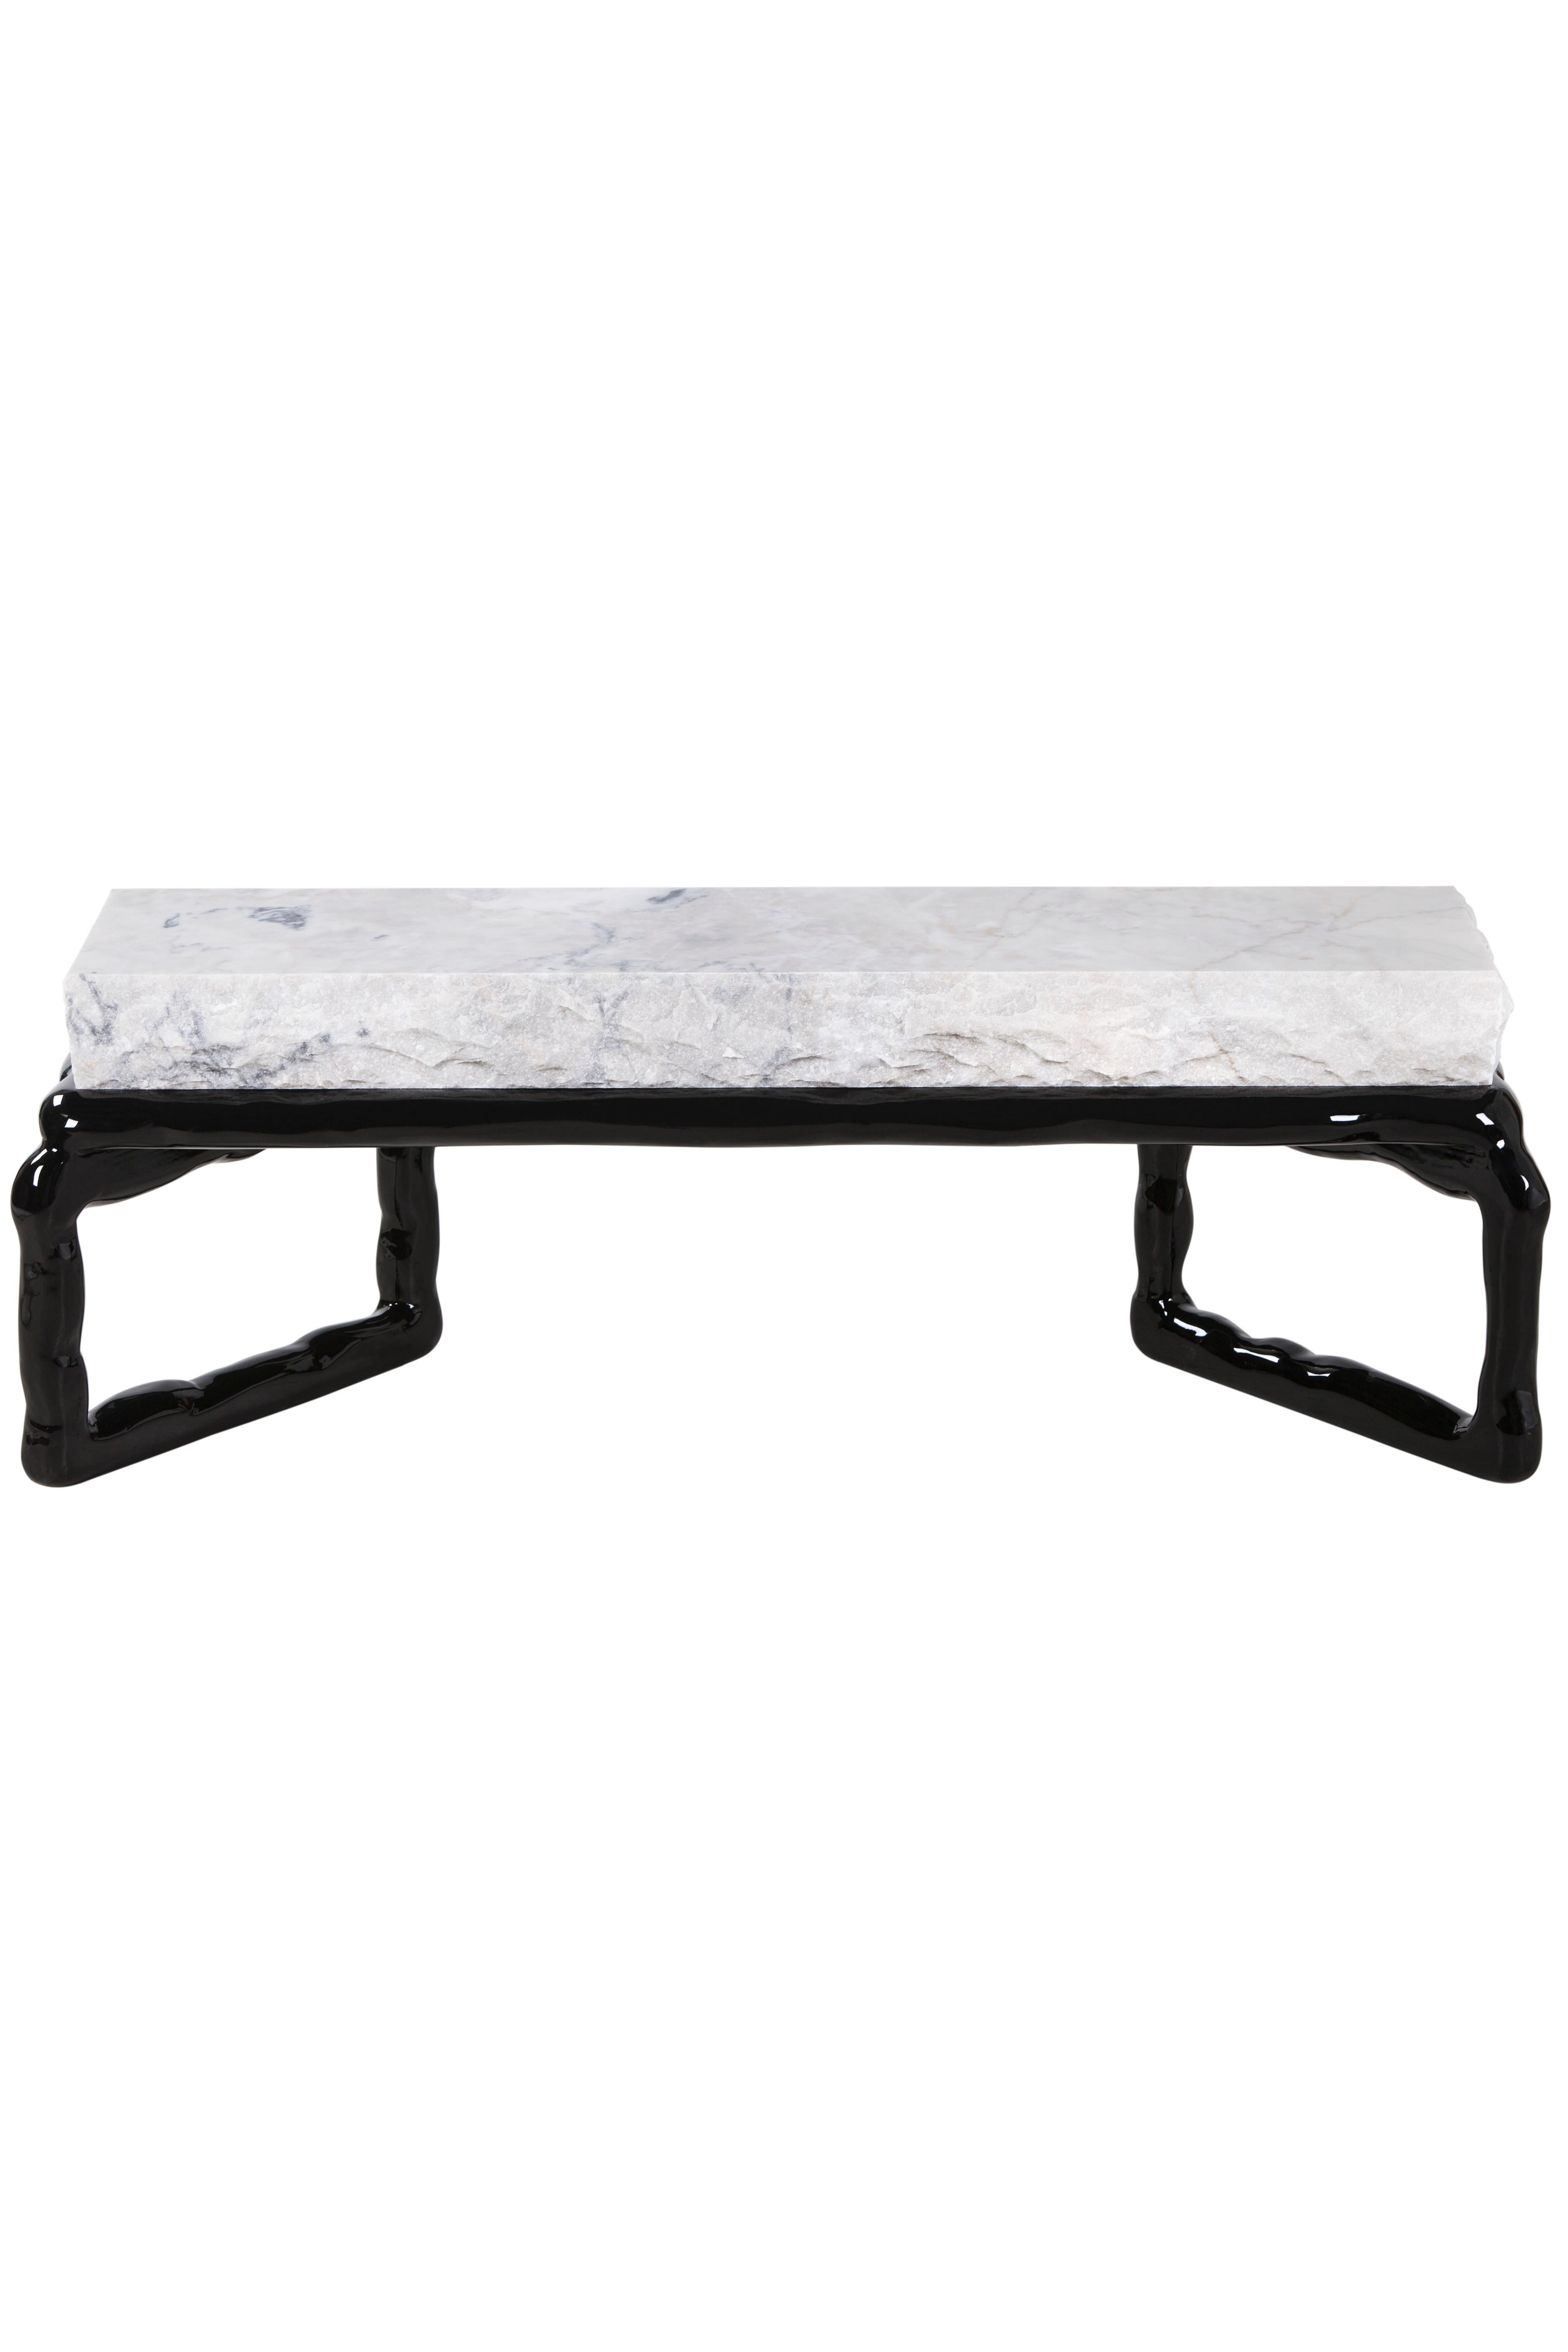 Table basse en pierre, Collection S, fabriquée à la main au Portugal - Europe par GF Modern.

La table basse Stone fait honneur à son nom en présentant une texture de pierre exubérante avec de magnifiques veines complexes.

Le contraste entre le